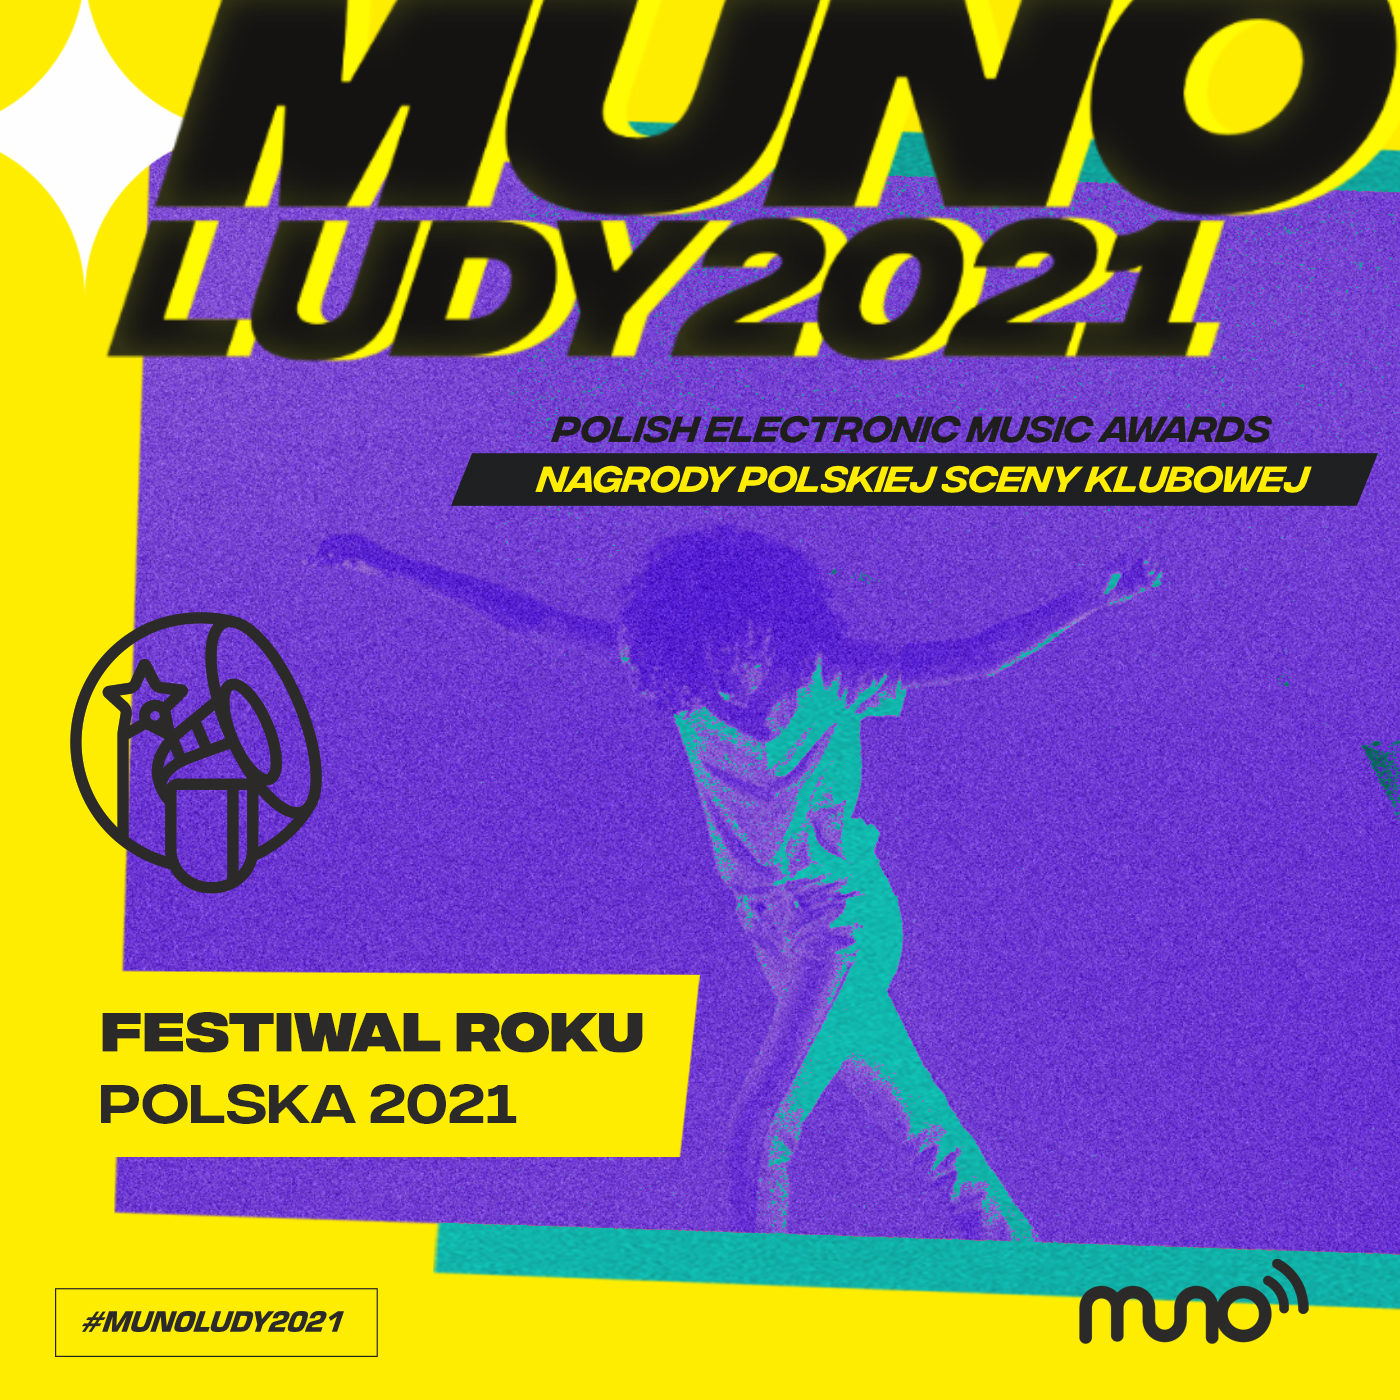 Munoludy 2021, Festiwal Roku Polska